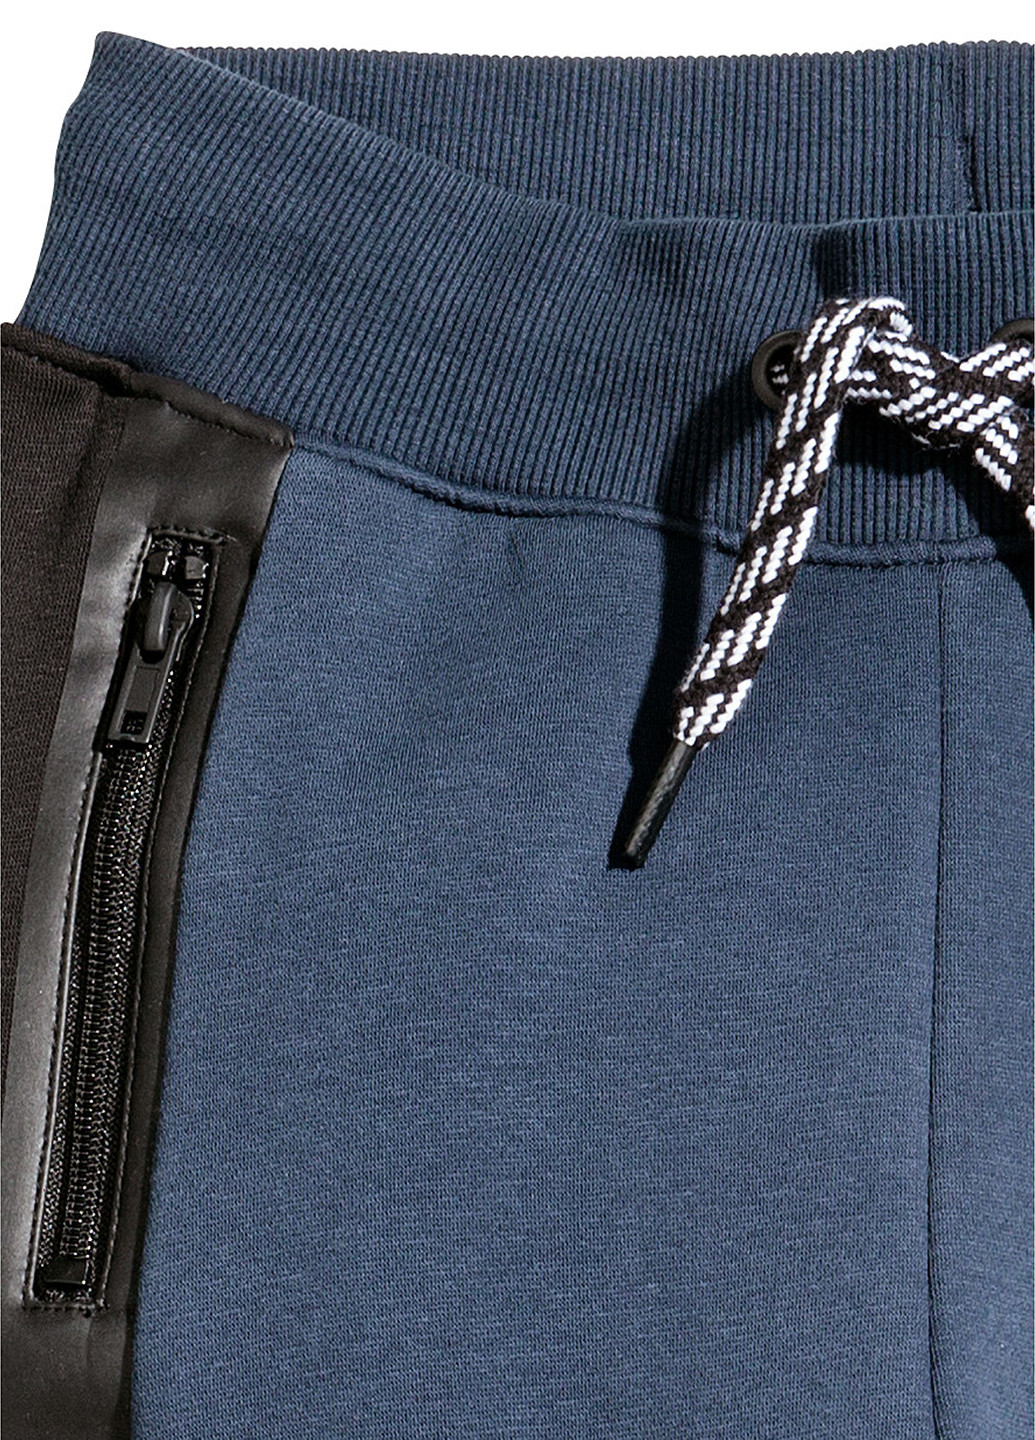 Синие спортивные демисезонные брюки джоггеры H&M